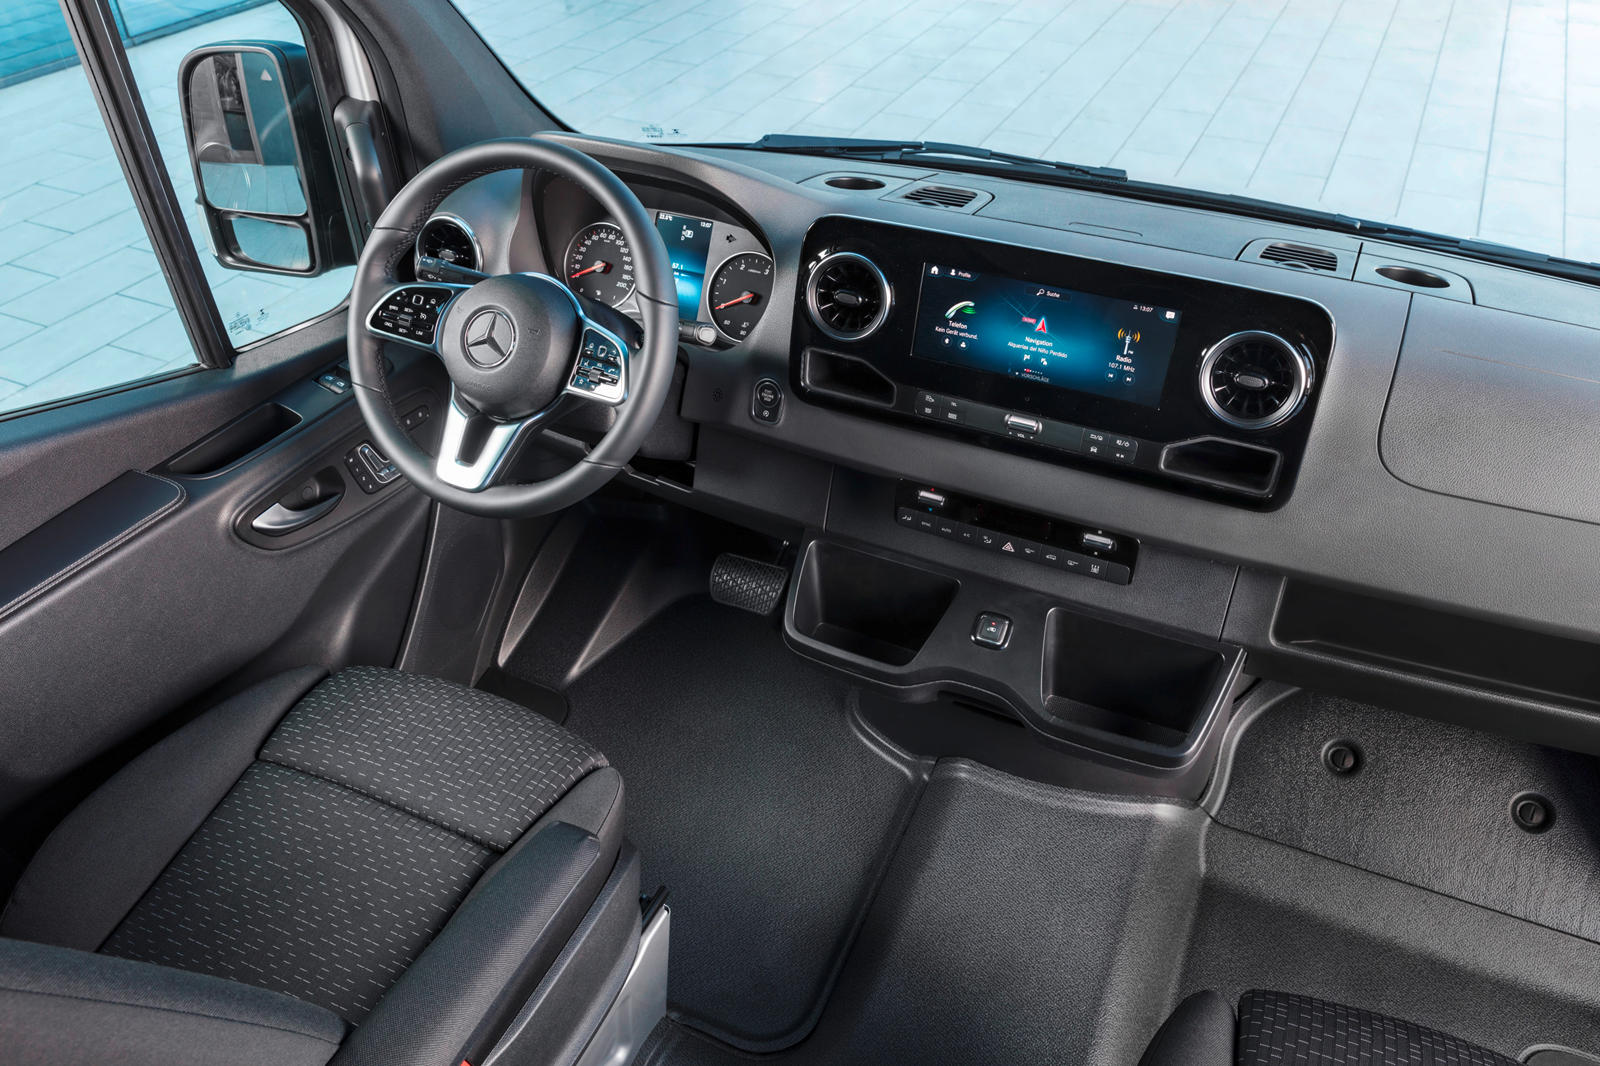 Mercedes-Benz Sprinter interior - Cockpit